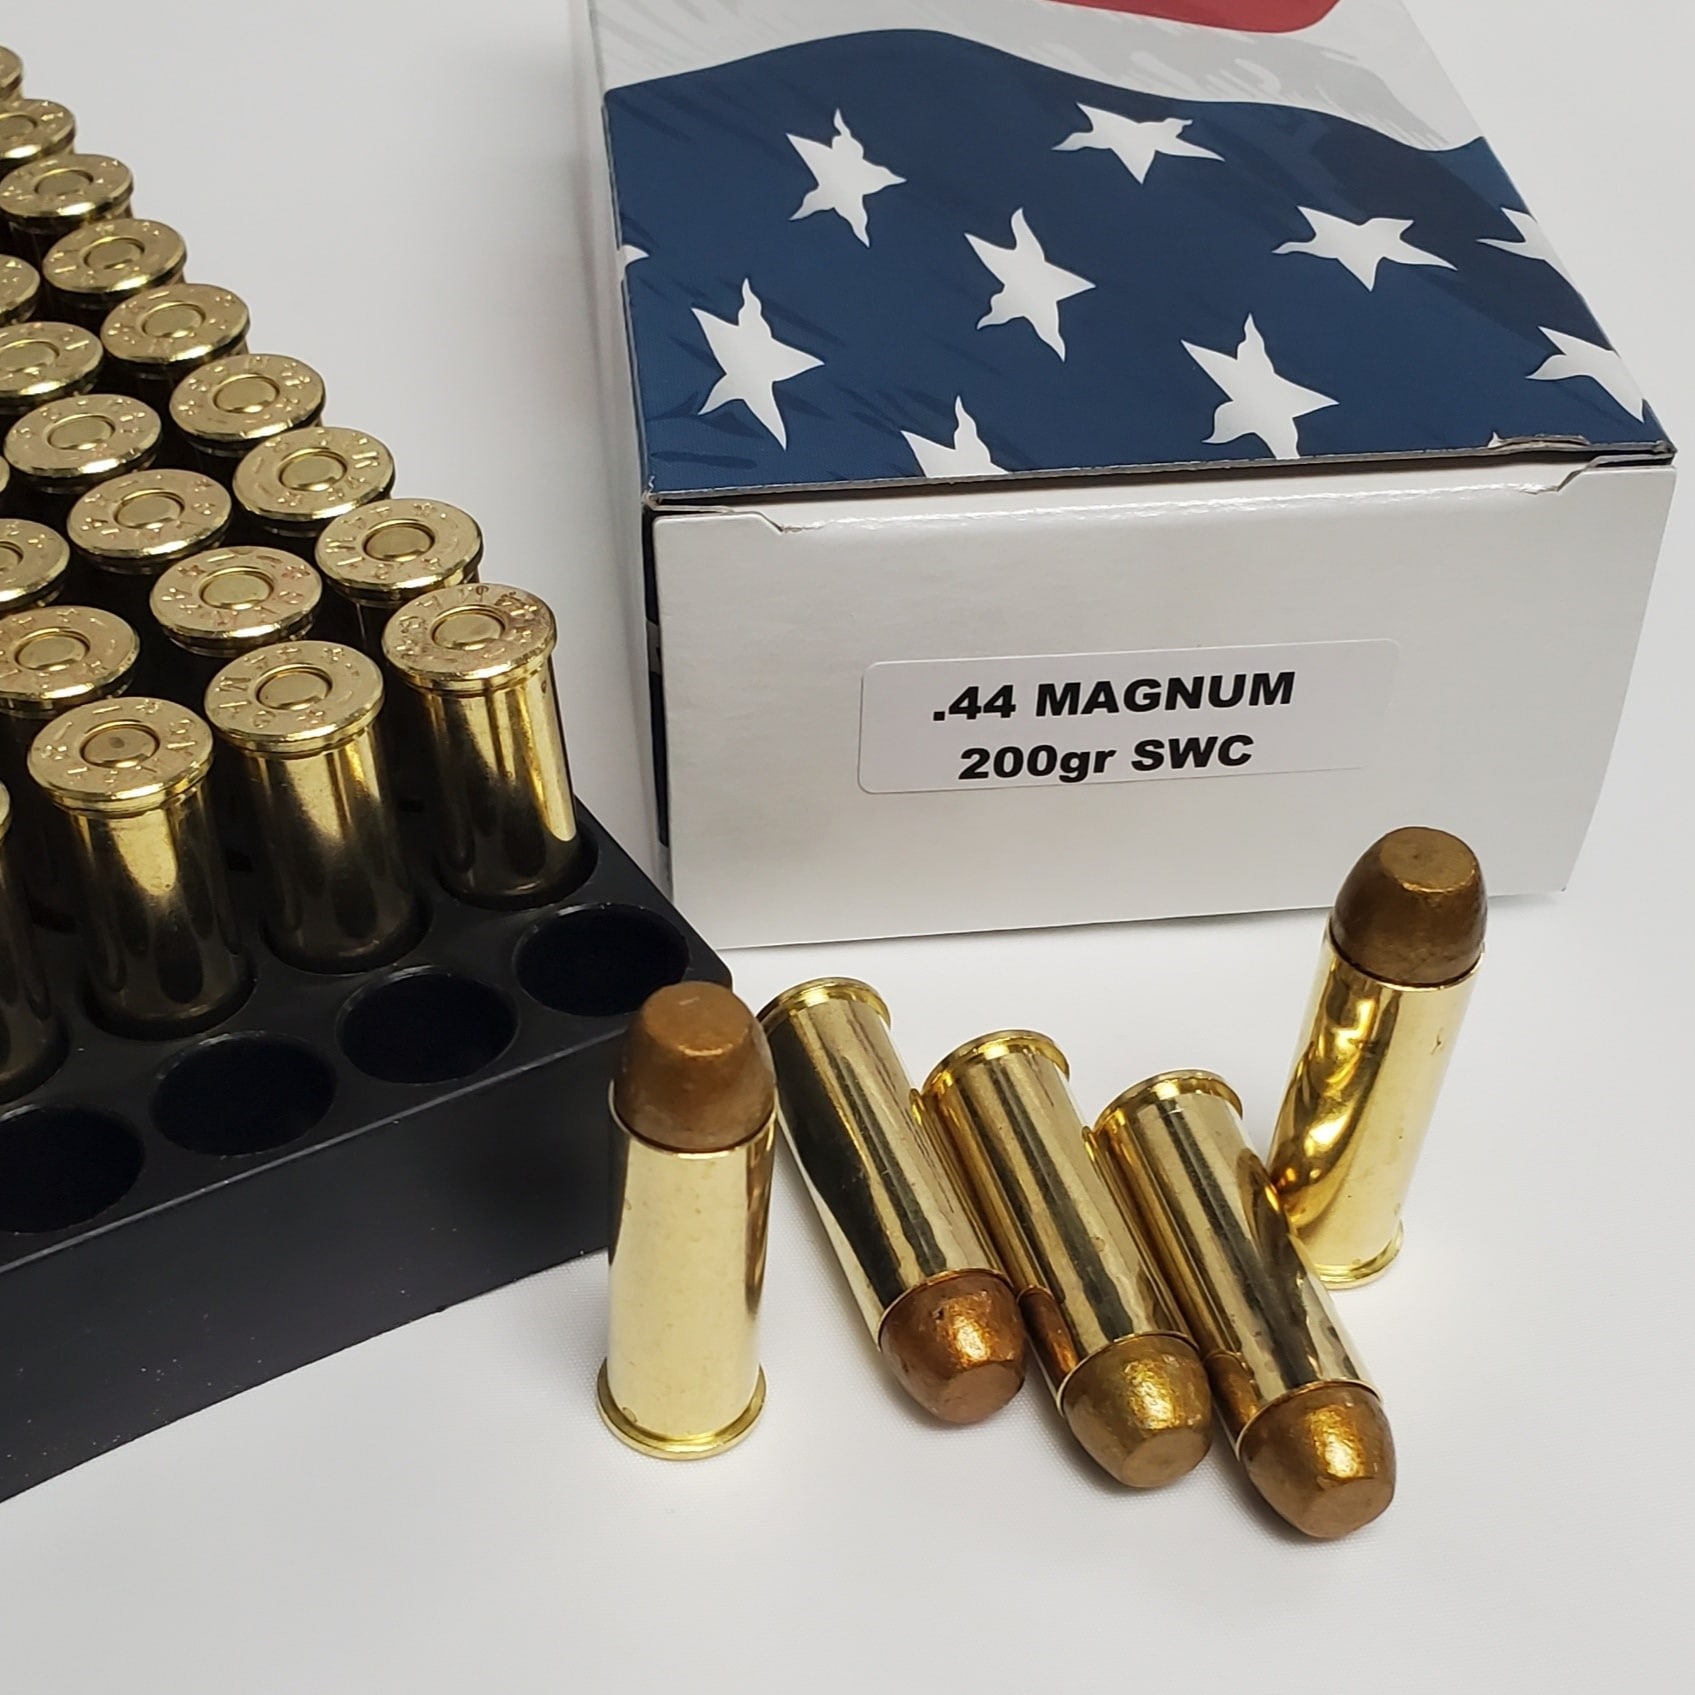 10mm magnum ammo